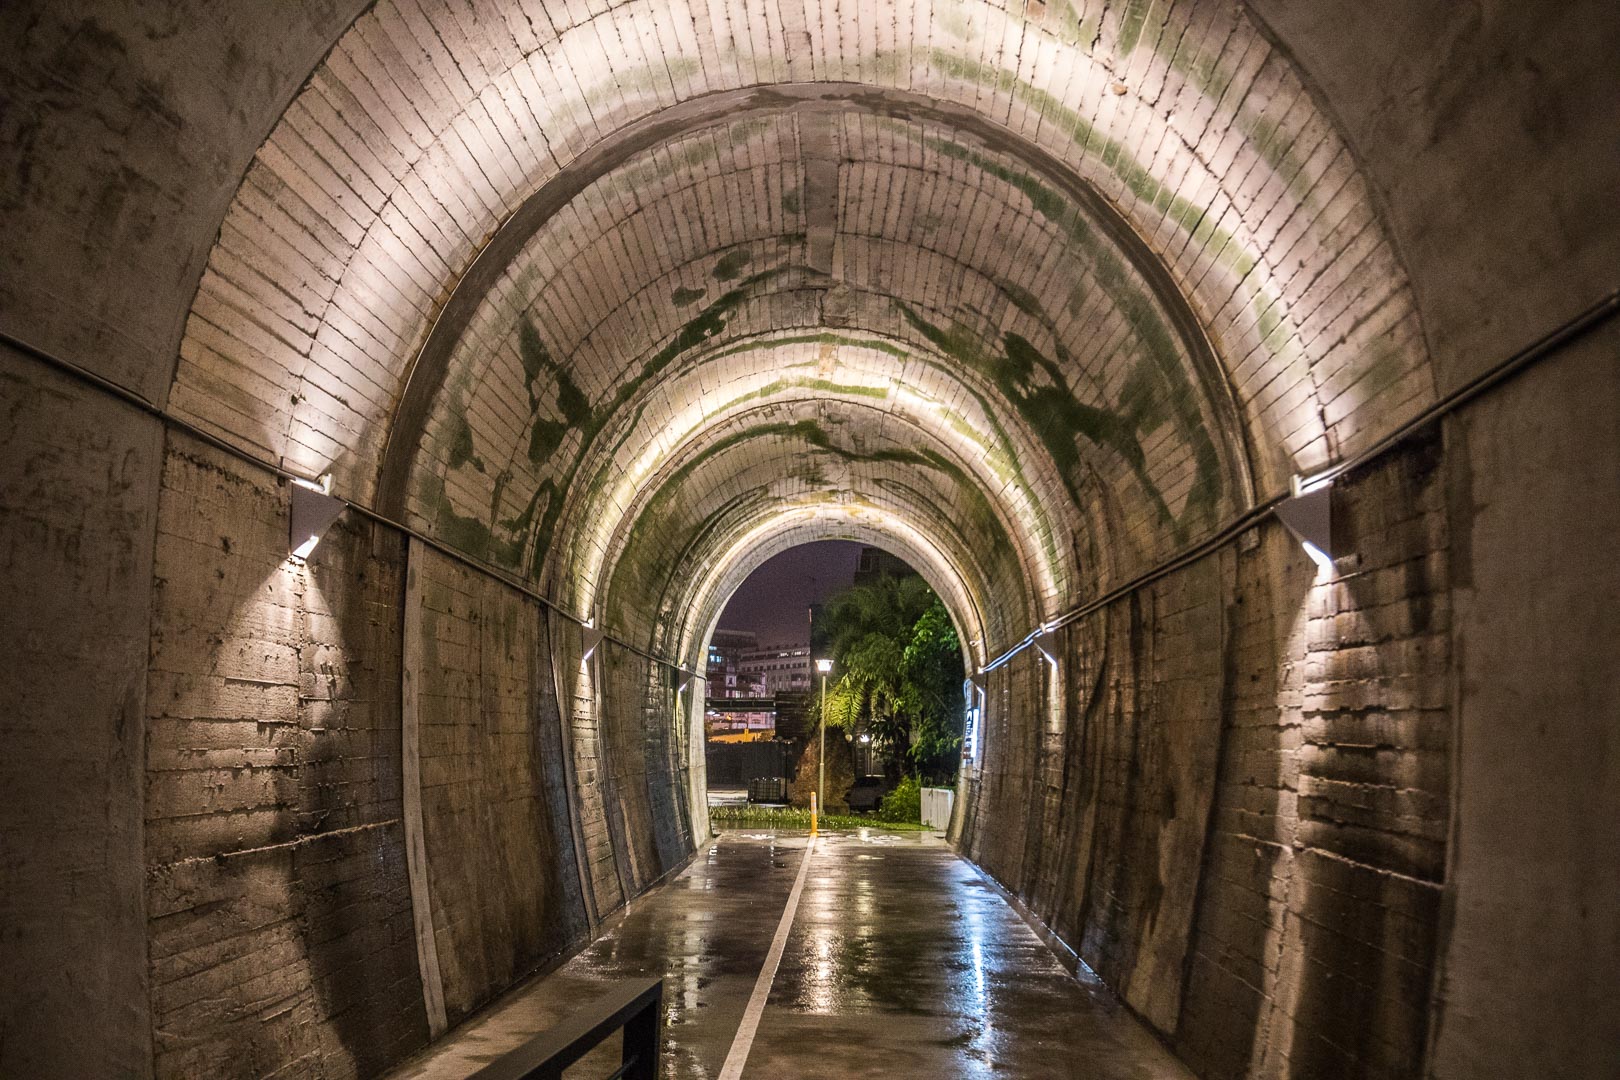 宜蘭景點,蘇澳景點,蘇東隧道3D海底彩繪隧道,蘇東隧道,3D海底彩繪隧道,宜蘭蘇東隧道3,宜蘭3D海底彩繪隧道